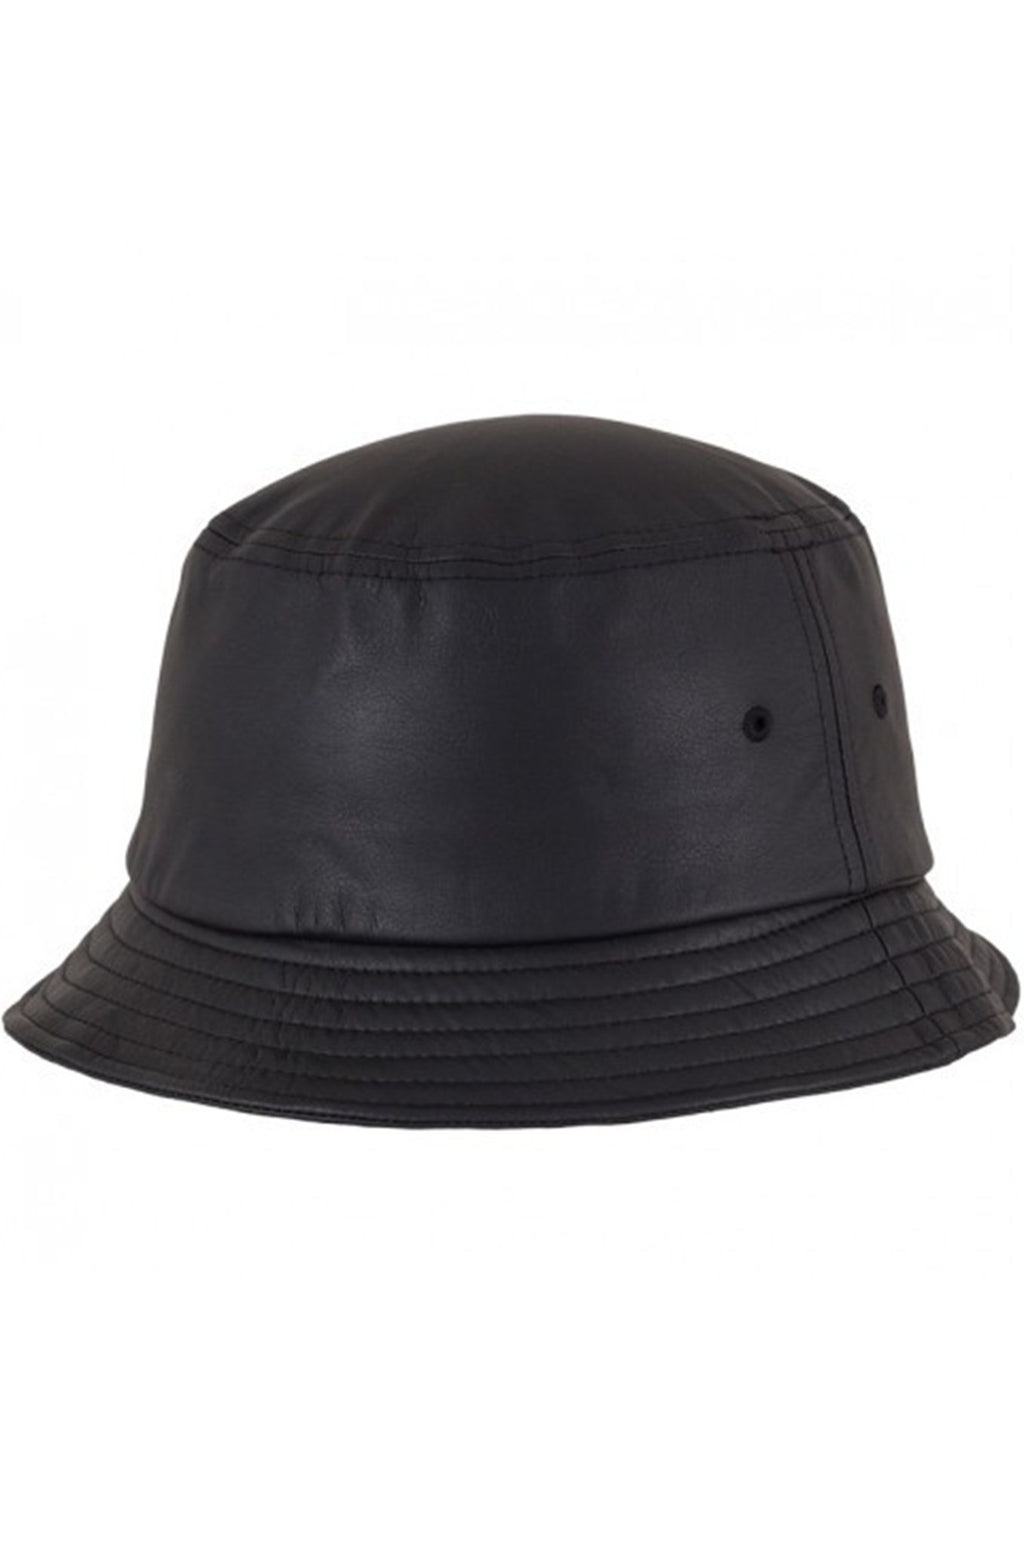 Sombrero de cubo - negros de cuero falso